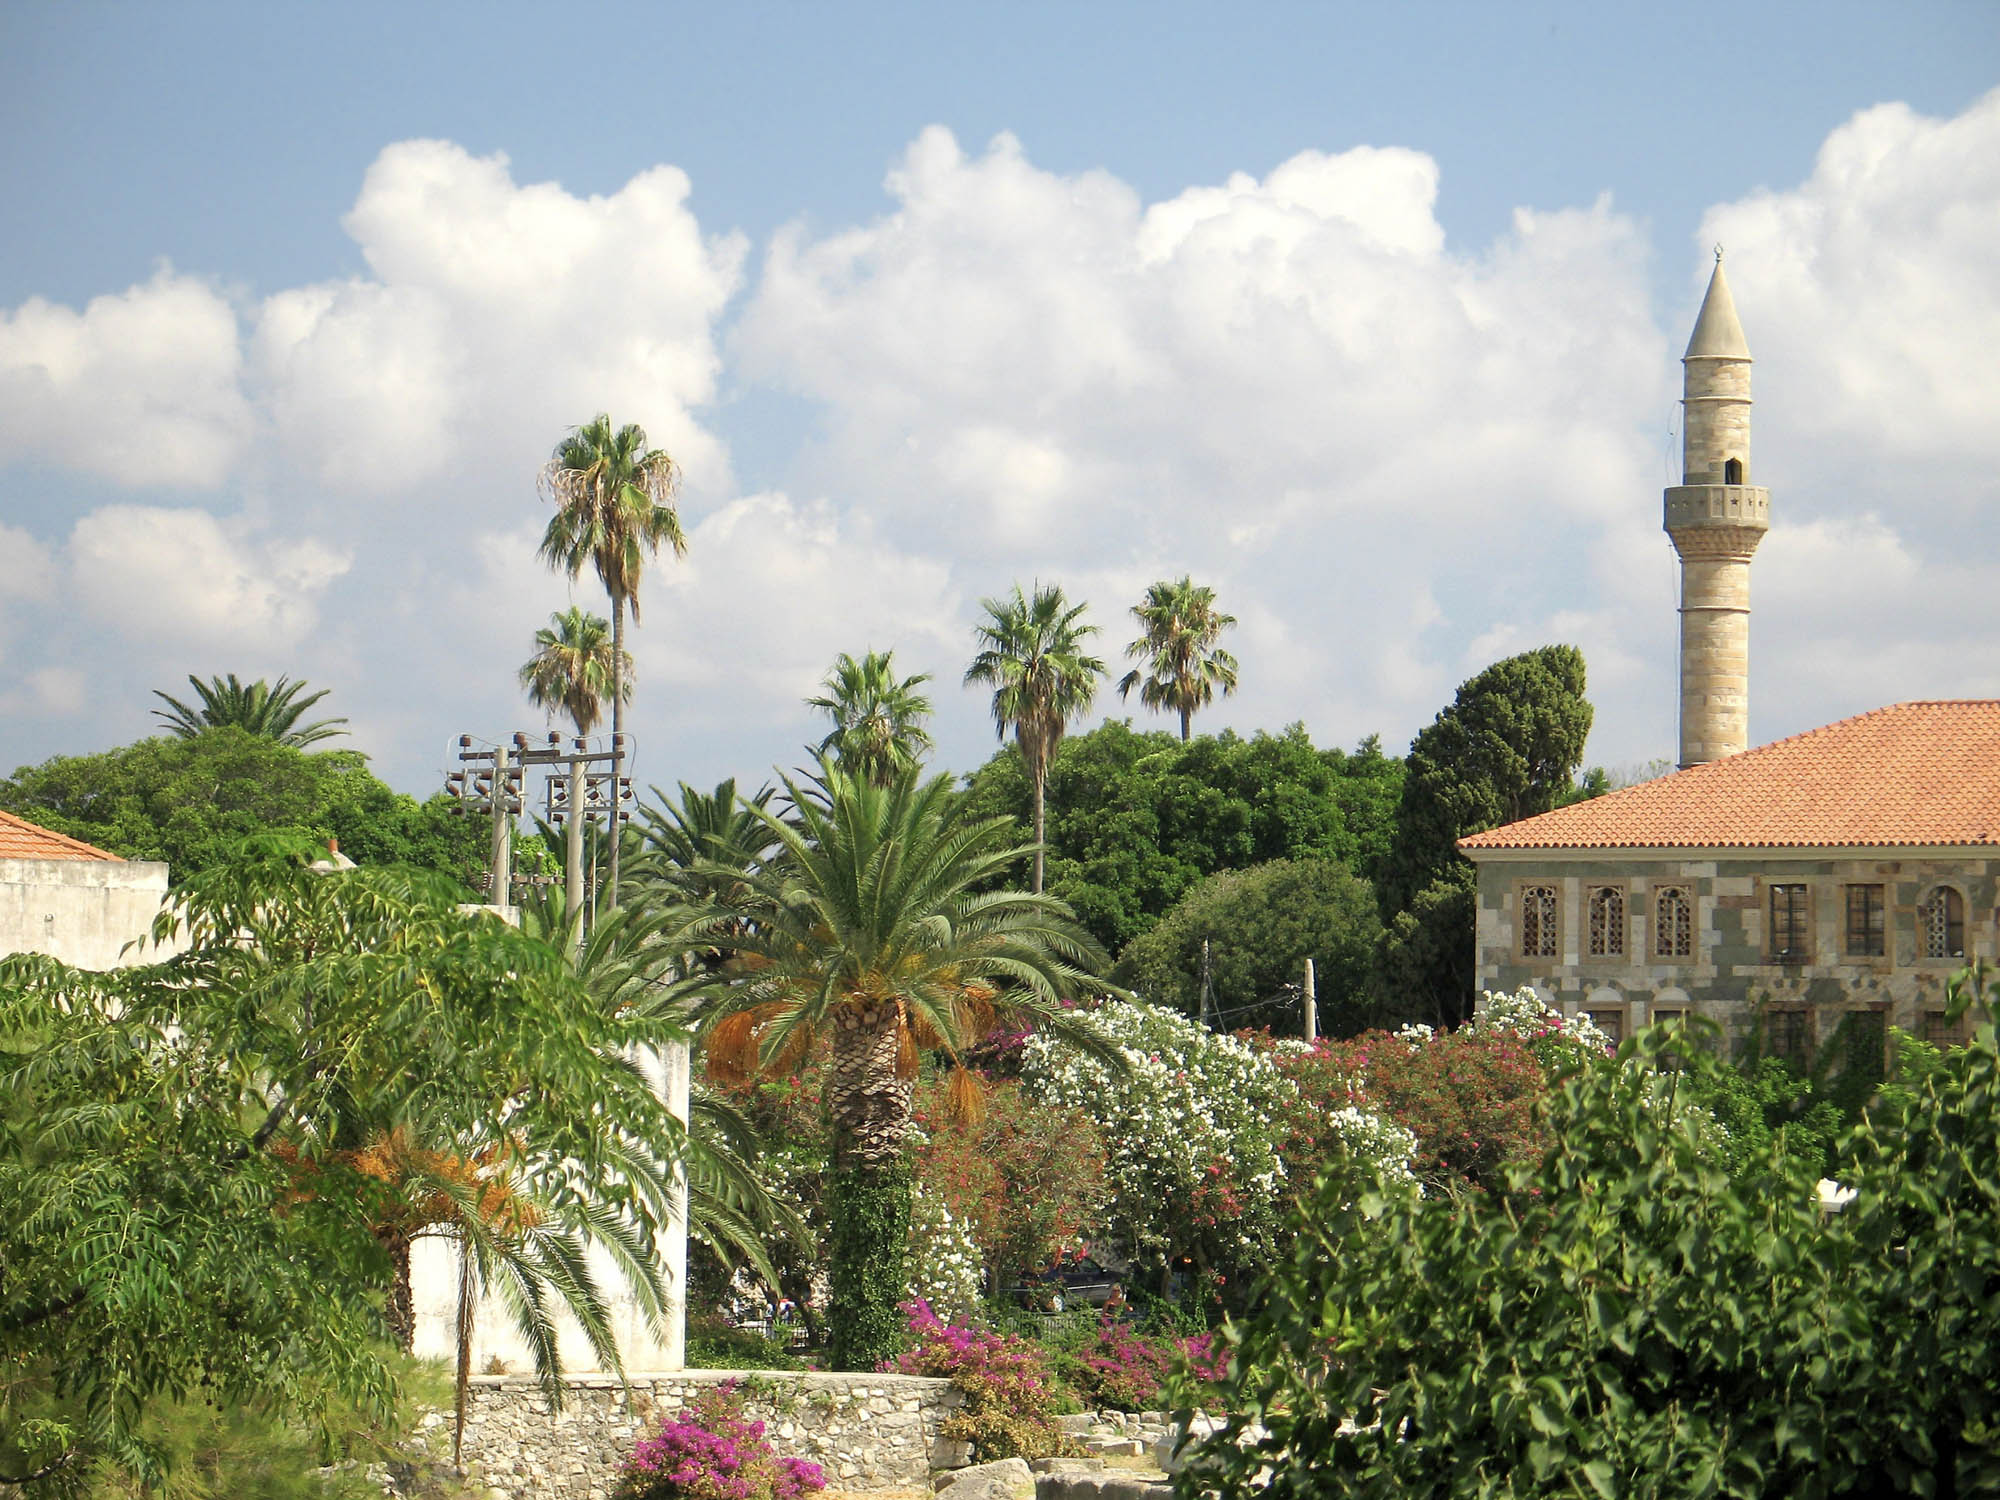 miasto kos, widok z daleka, majaczy minaret i palmy